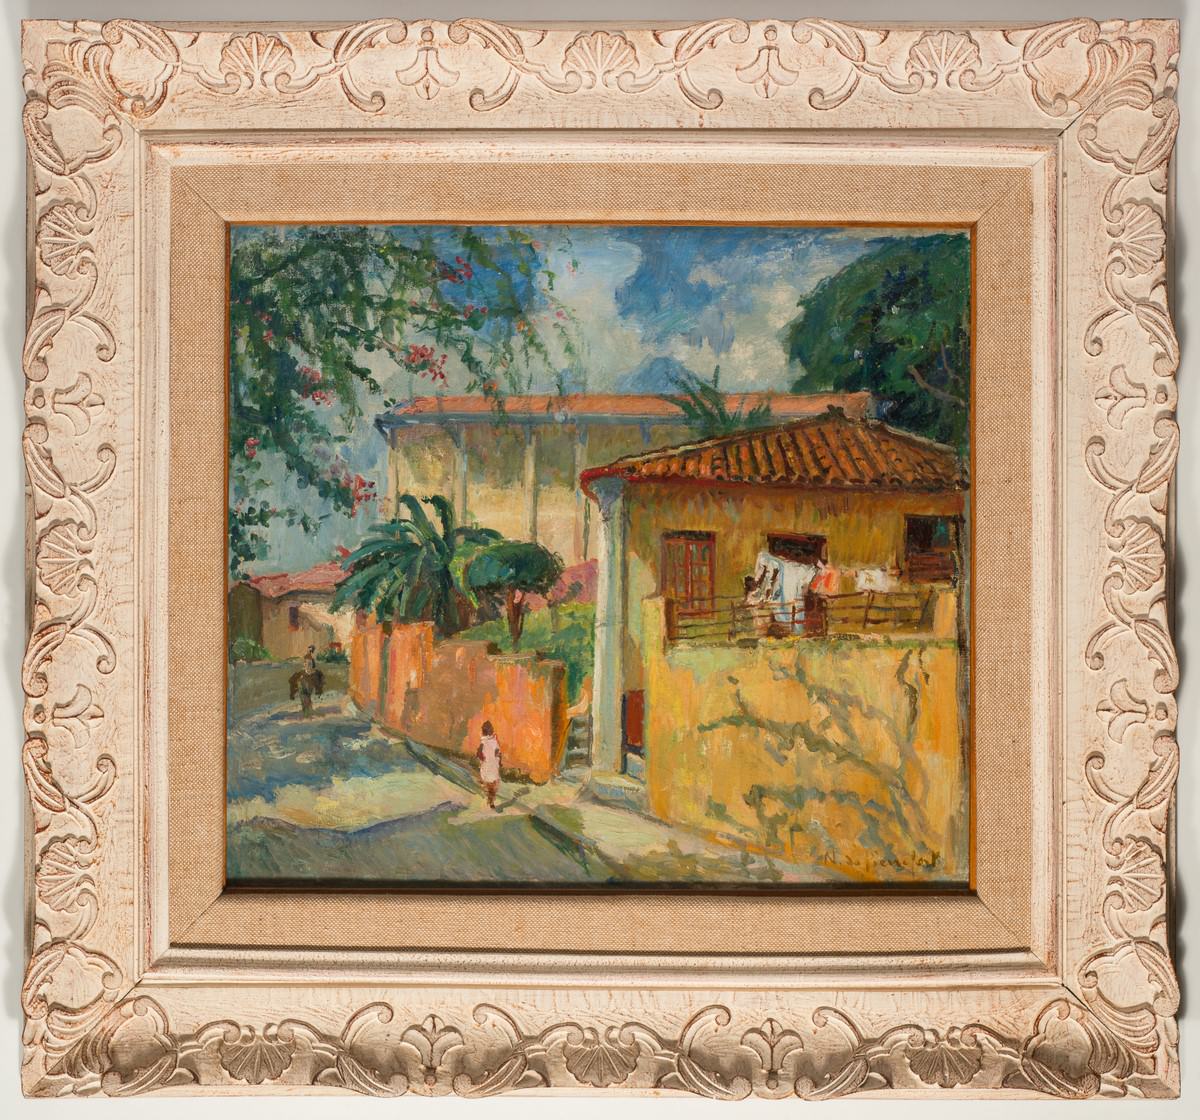 カーサカリオカ - マリーニヴォリードピエールフォートハウスオブグローリー, [、 1950], キャンバスに油彩. ディスクロージャー.